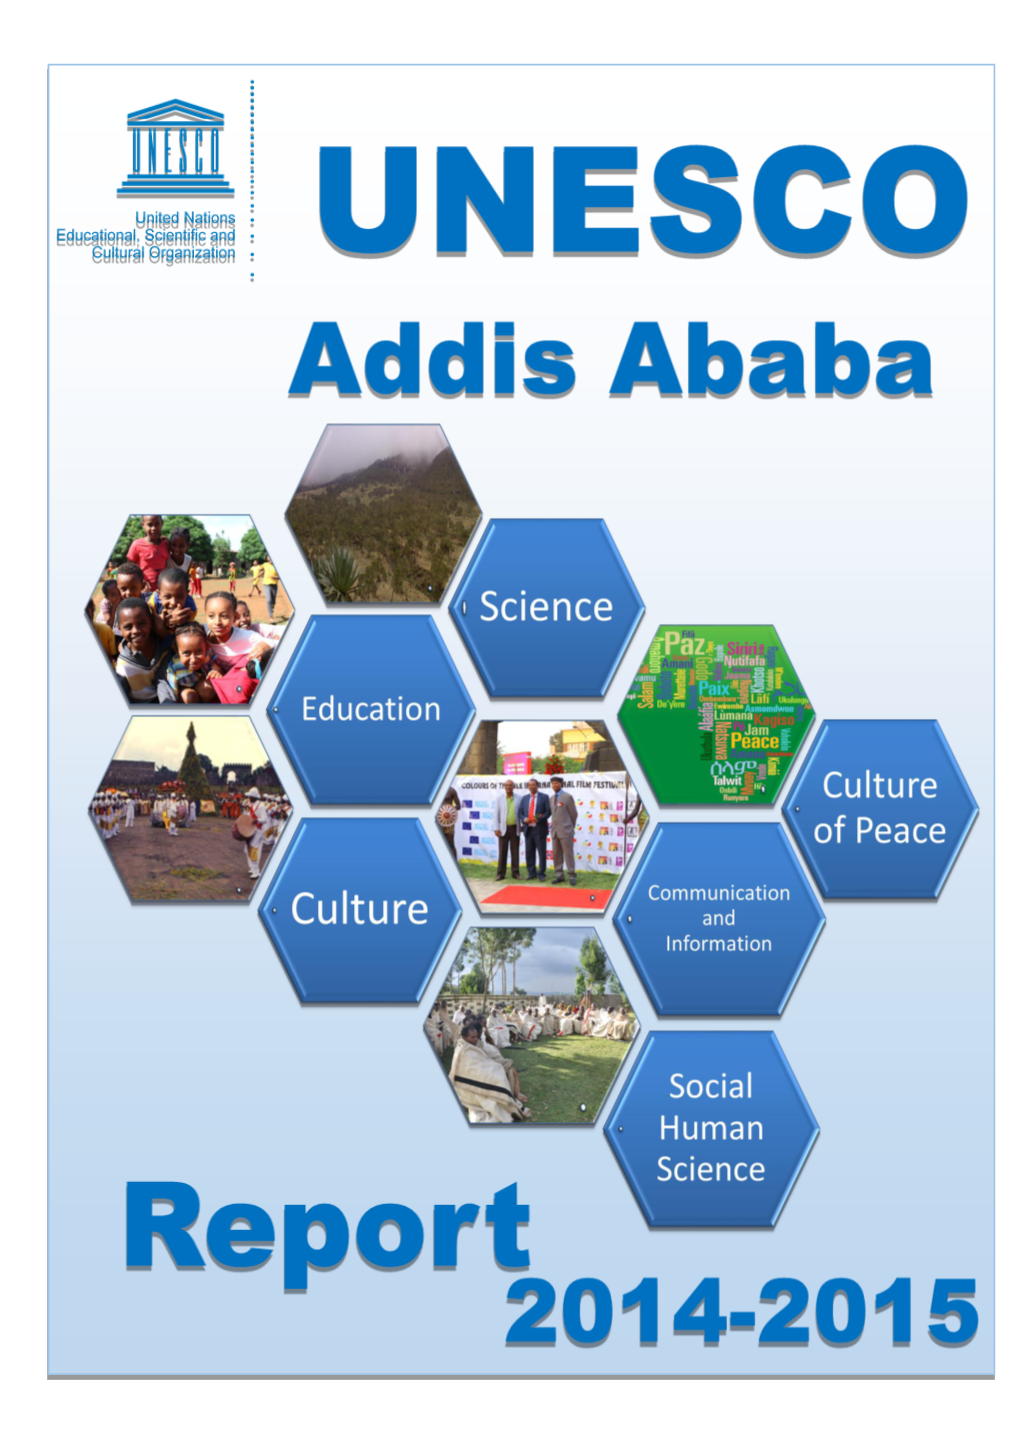 UNESCO Addis-Ababa